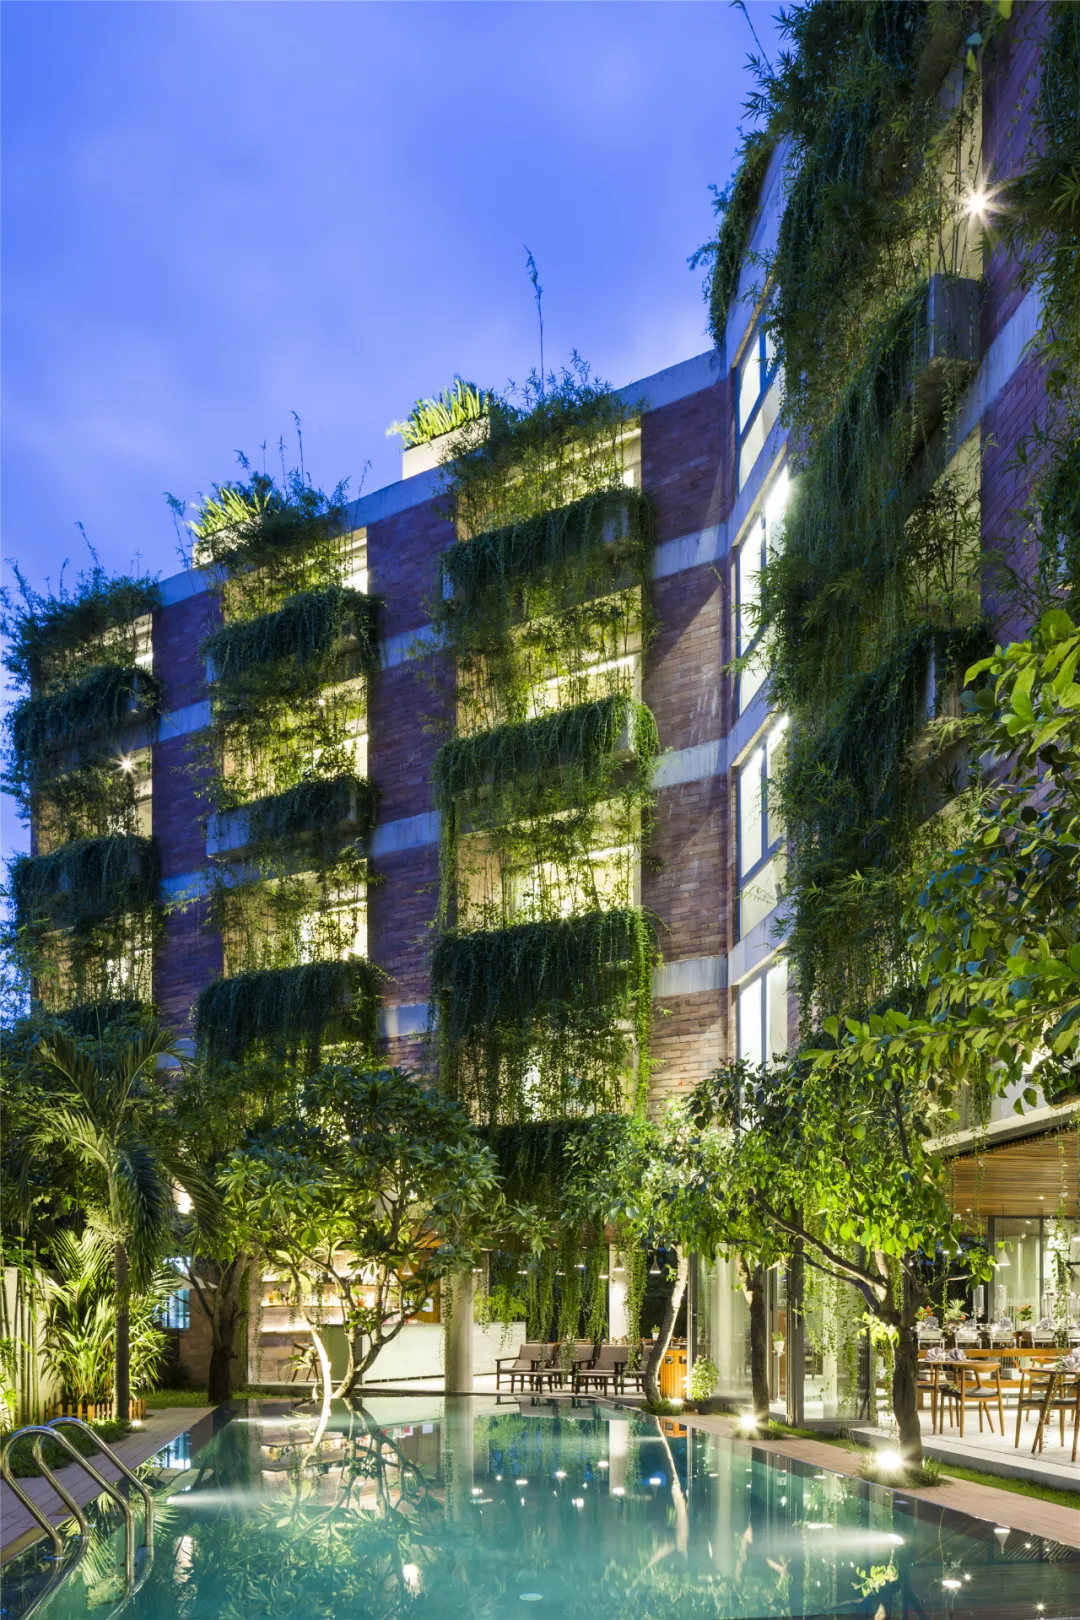 案例分享 | 探索绿色建筑新形式——VTN建筑事务所作品集锦（一）